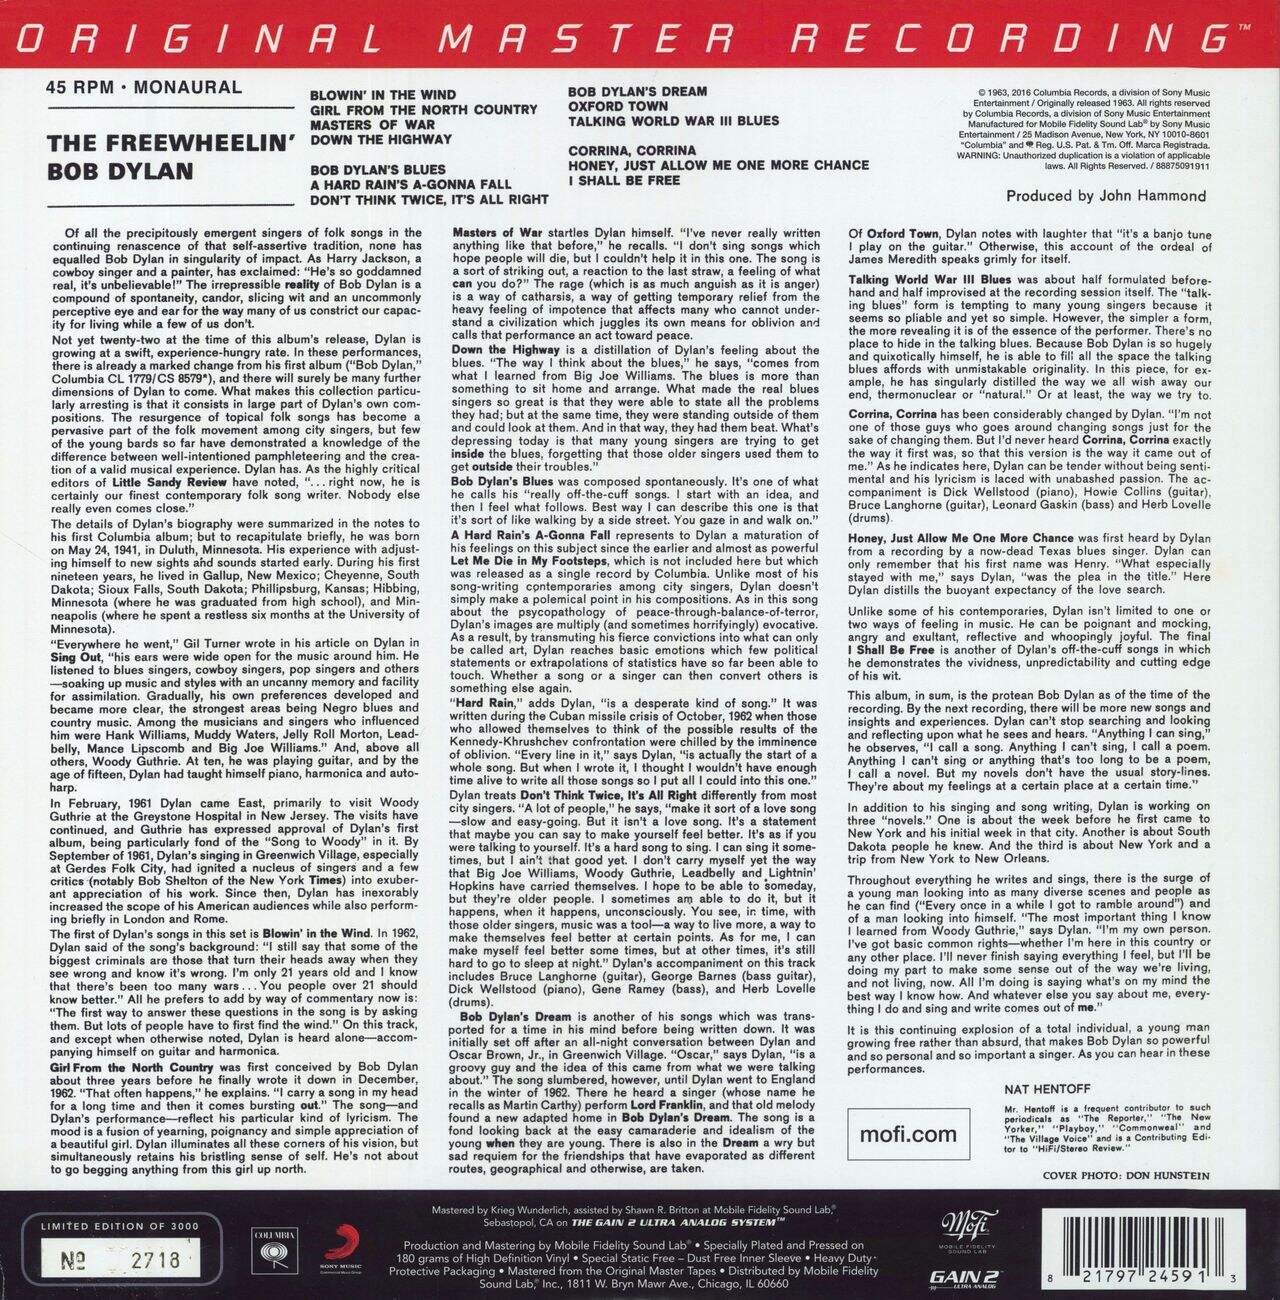 Bob Dylan The Freewheelin' Bob Dylan - 180gm 45rpm US 2-LP vinyl set